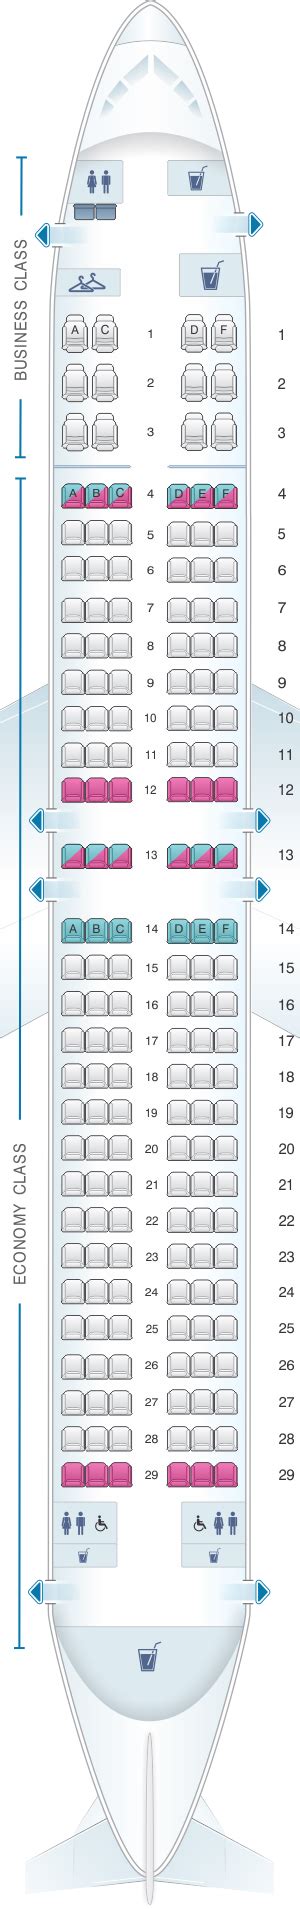 Boeing 737 800 Winglets Seating Plan Qantas Tutorial Pics